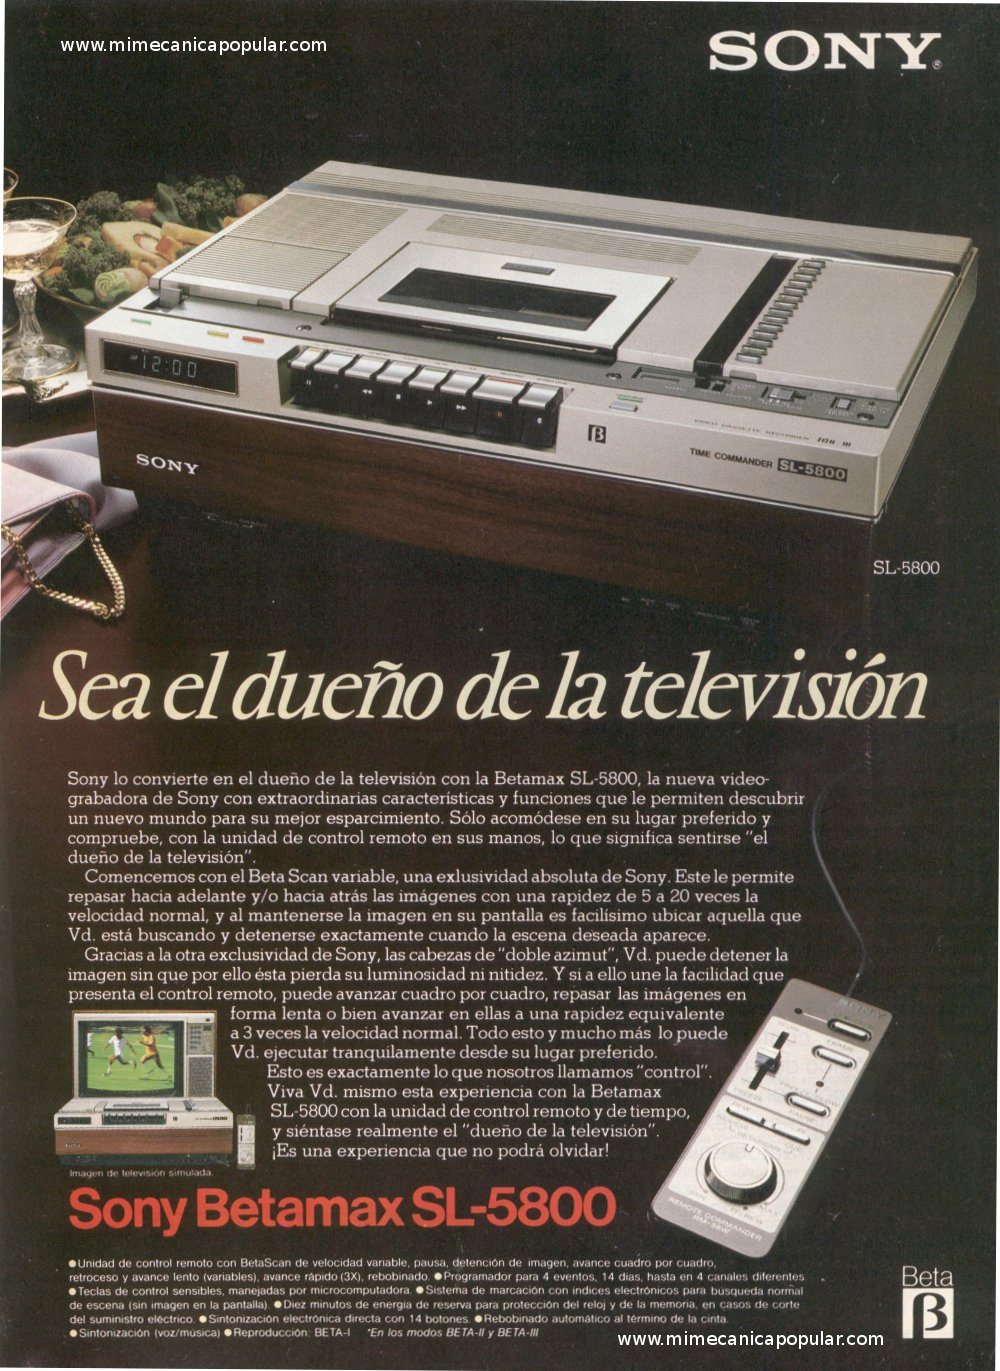 Publicidad - Sony Betamax SL-5800 - Noviembre 1981